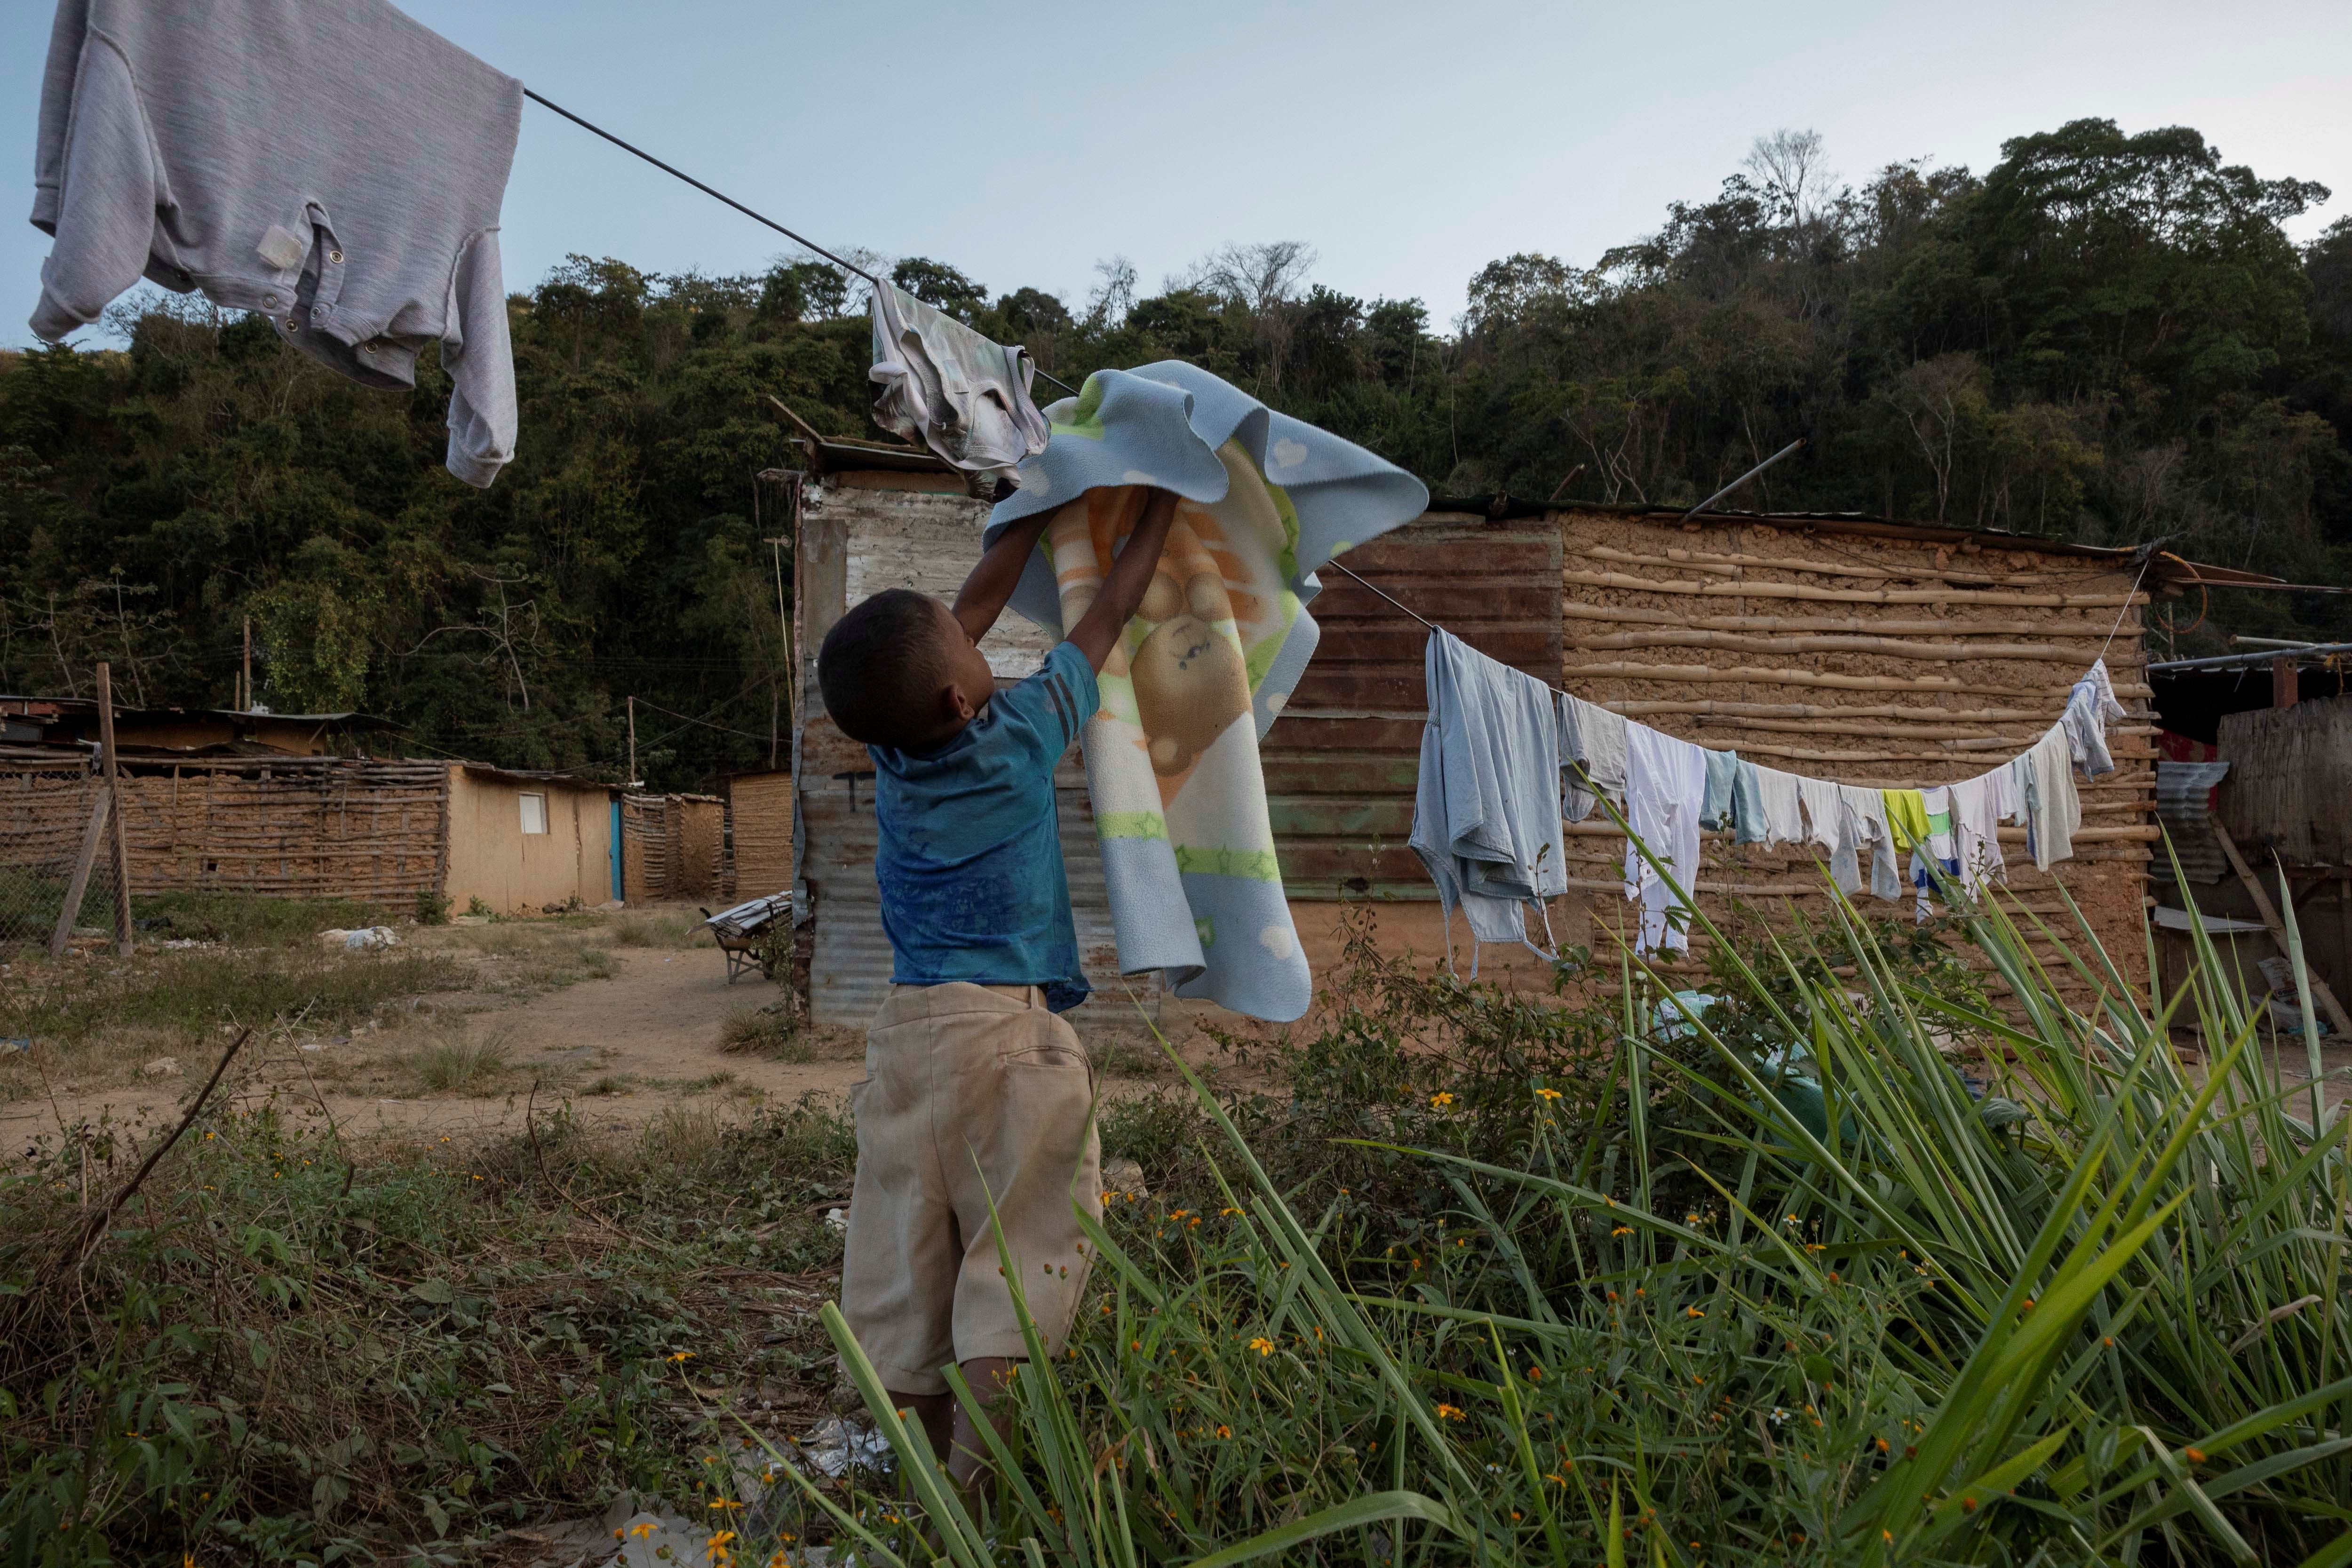 Vivir entre tierra y miseria, el precio de huir de la violencia en Venezuela (FOTOS)